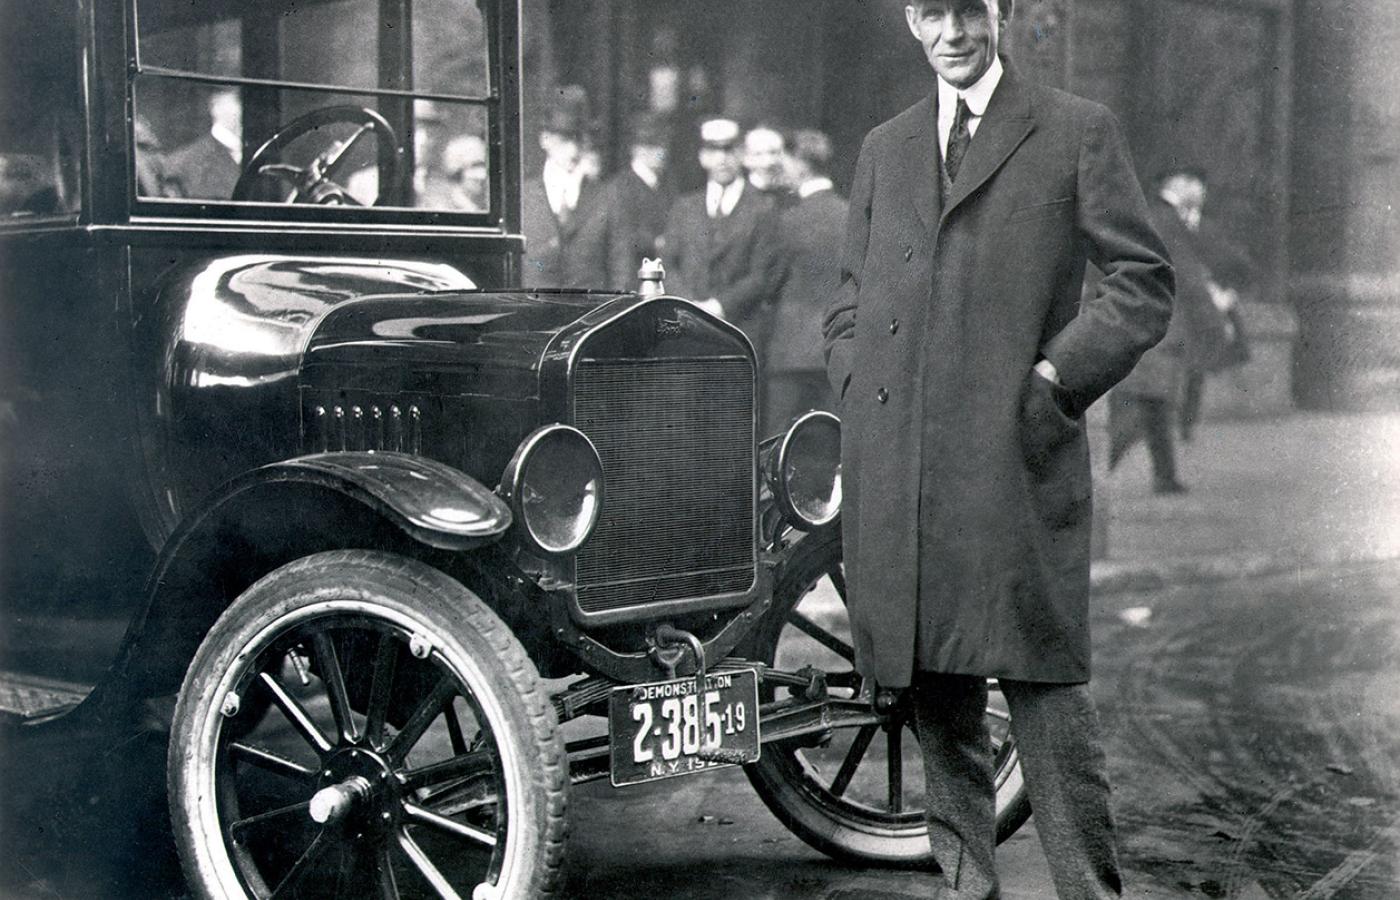 Henry Ford (1863 - 1947), legendarny założyciel Ford Motor Company. Zrewolucjonizował system produkcji aut.